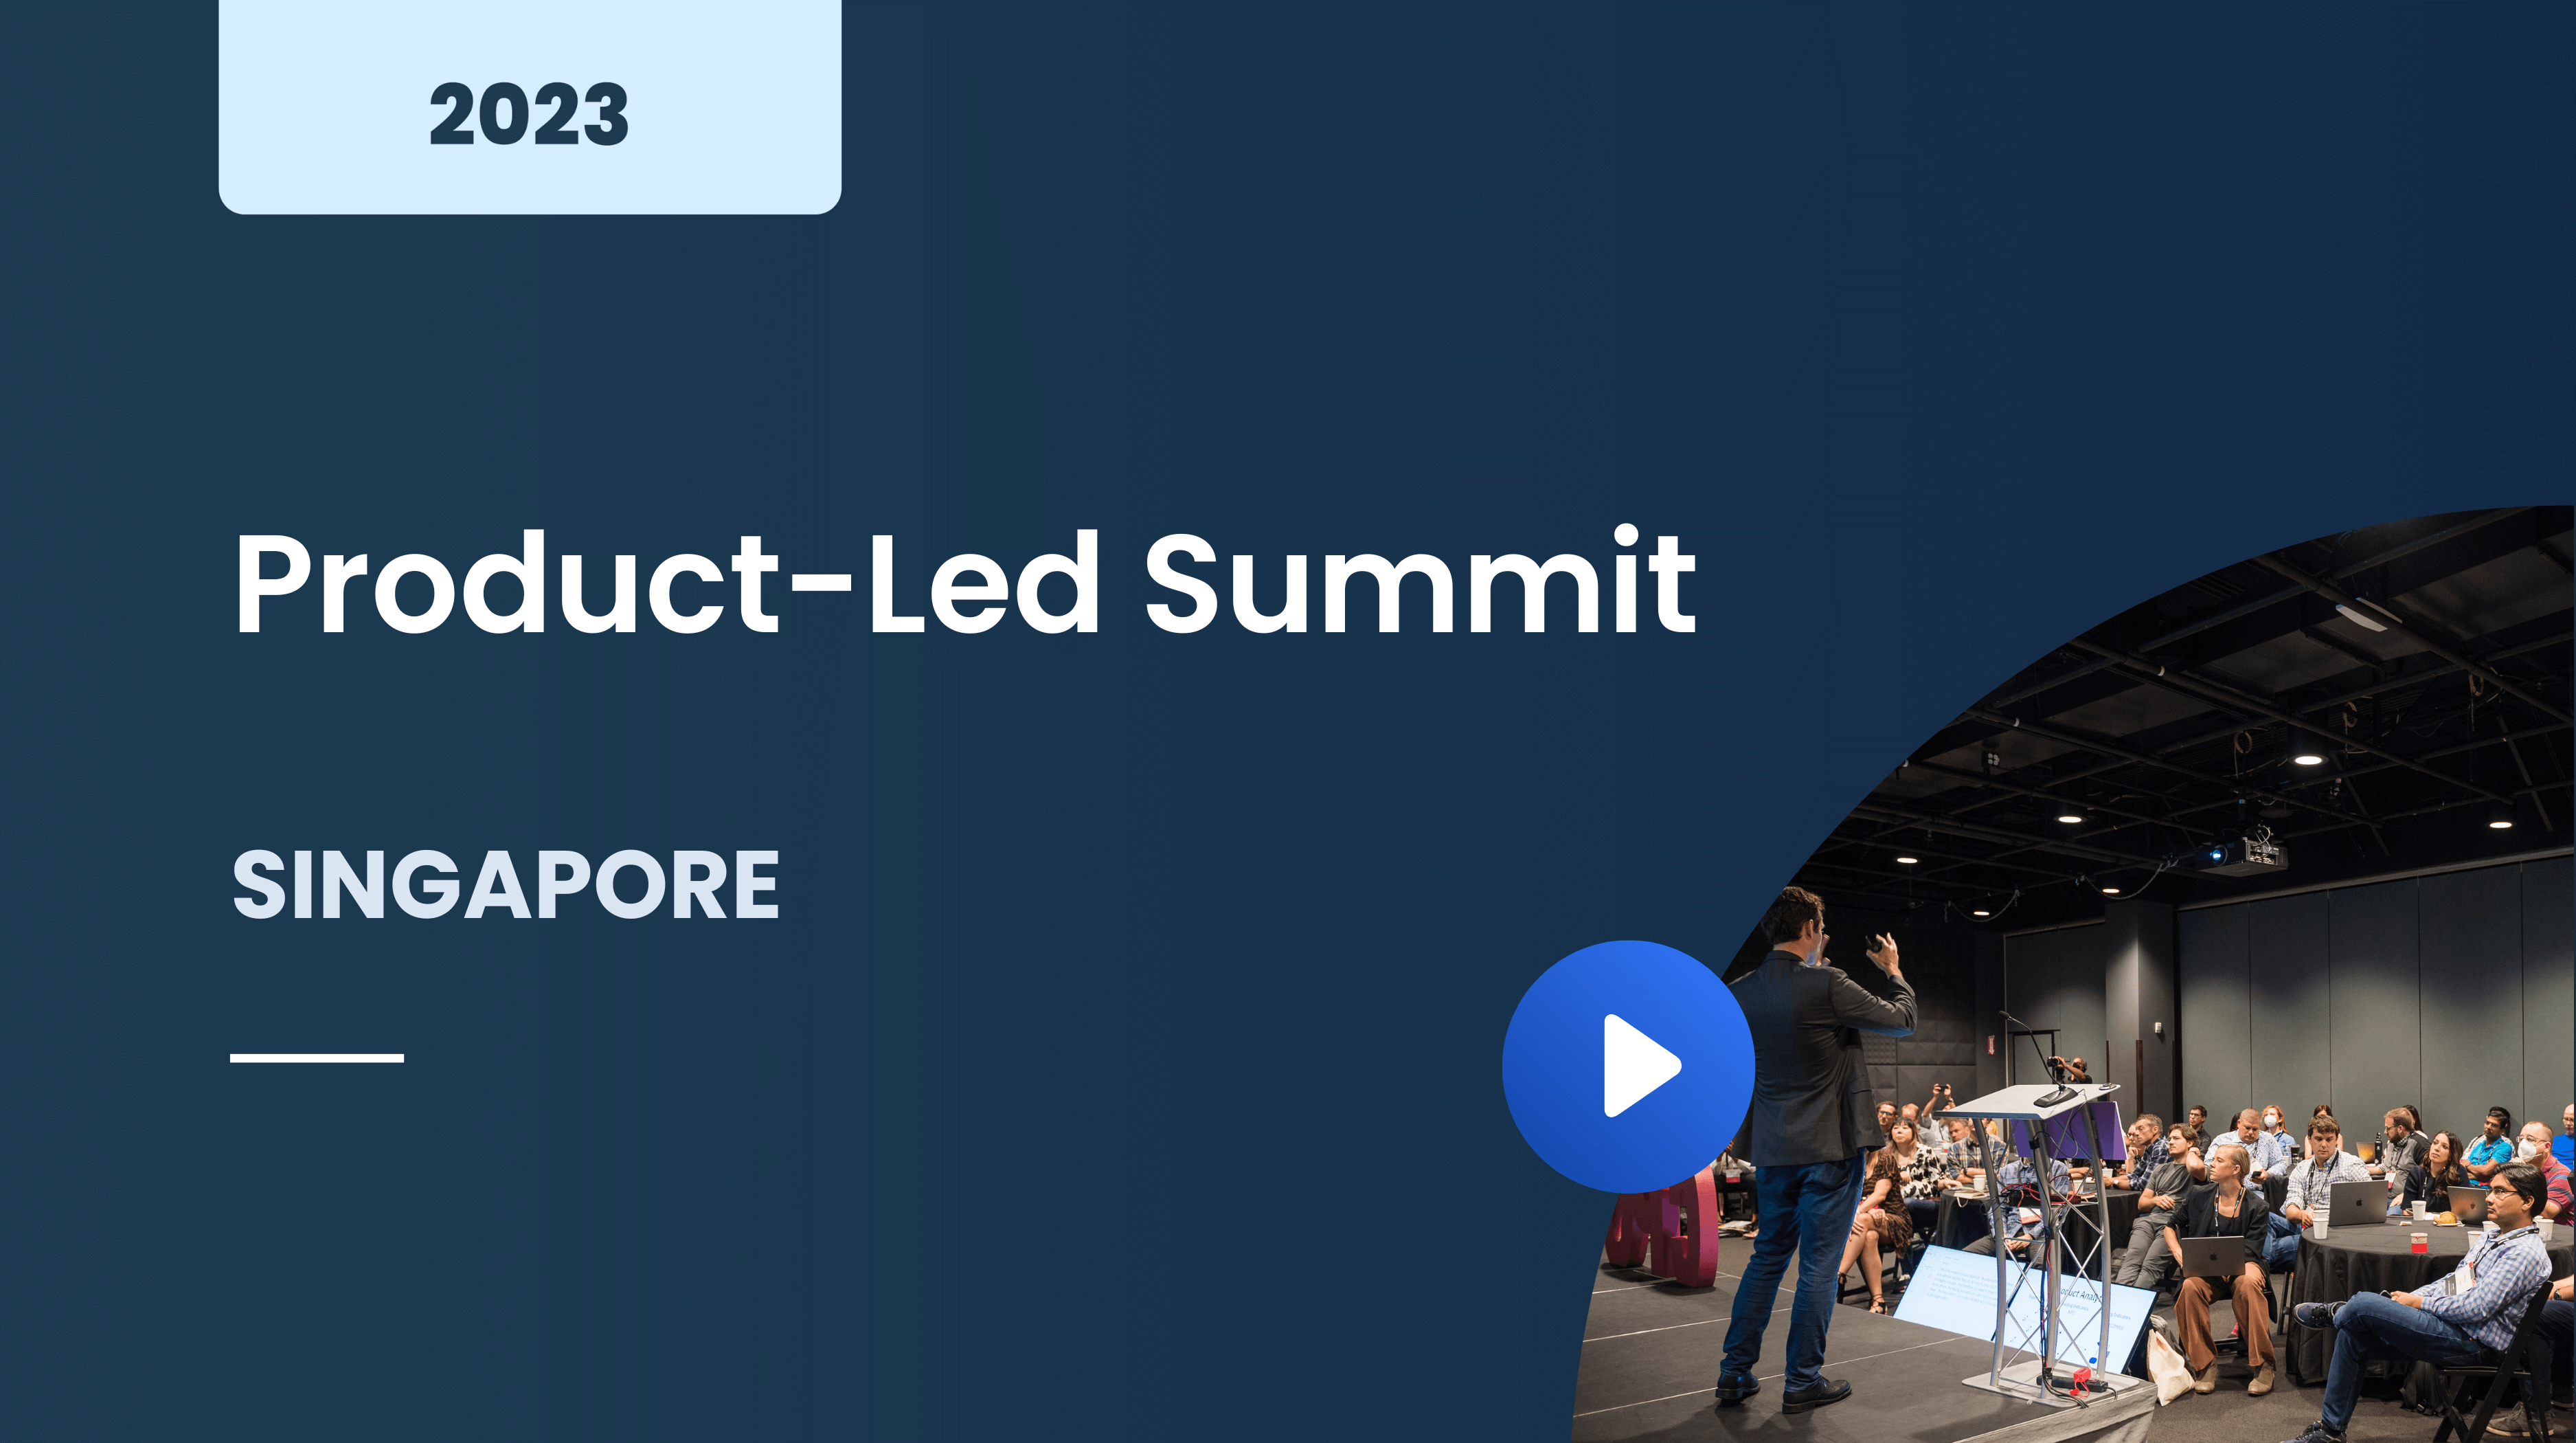 Product-Led Summit Singapore 2023